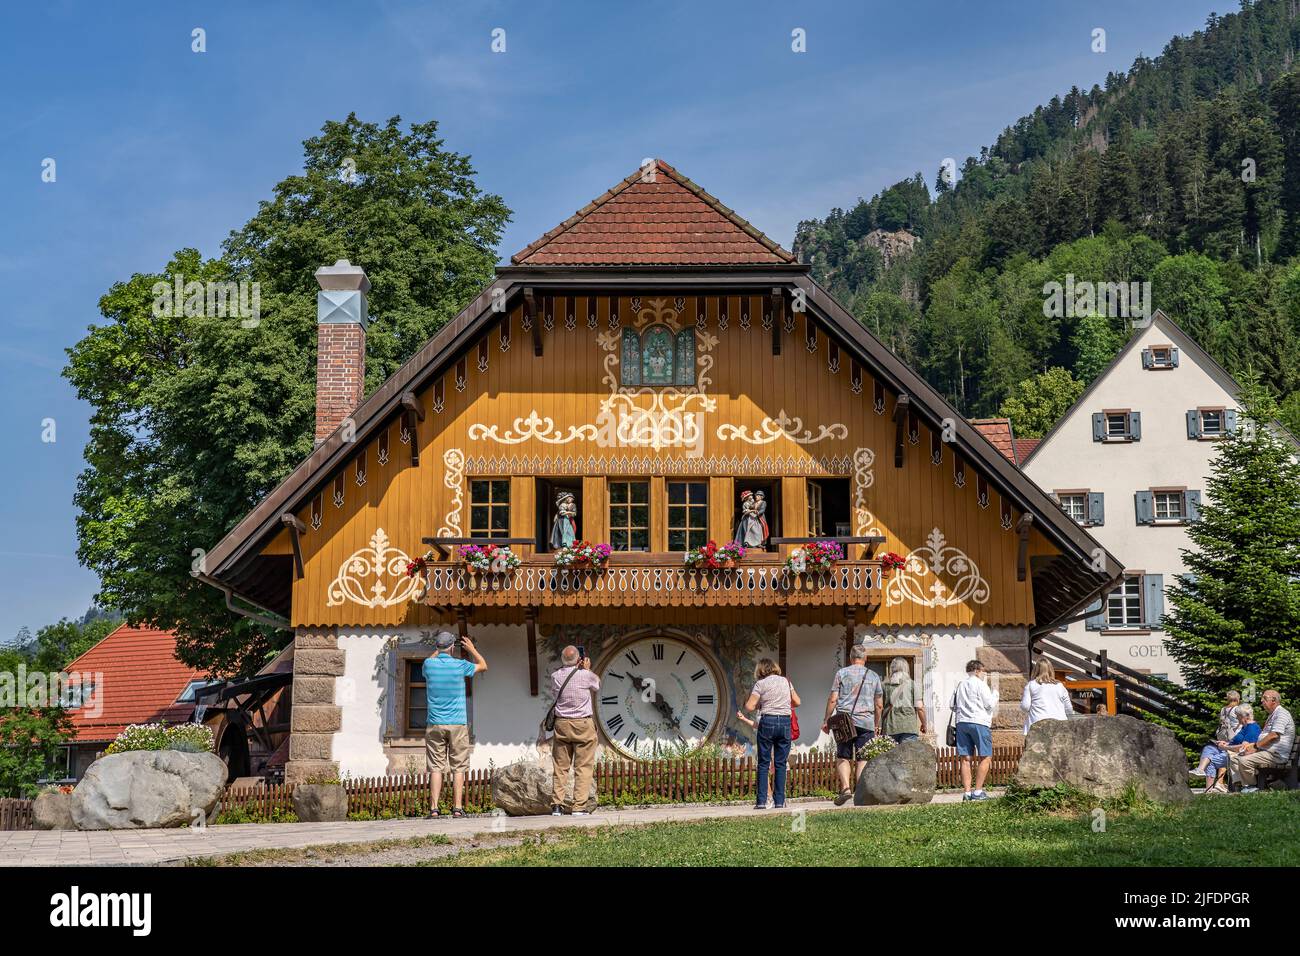 Traditionelles Schwarzwaldhaus des Hofgut Sternen bei Breitnau, Schwarzwald, Baden-Württemberg, Deutschland |  Traditional Black Forest house of Hofgu Stock Photo